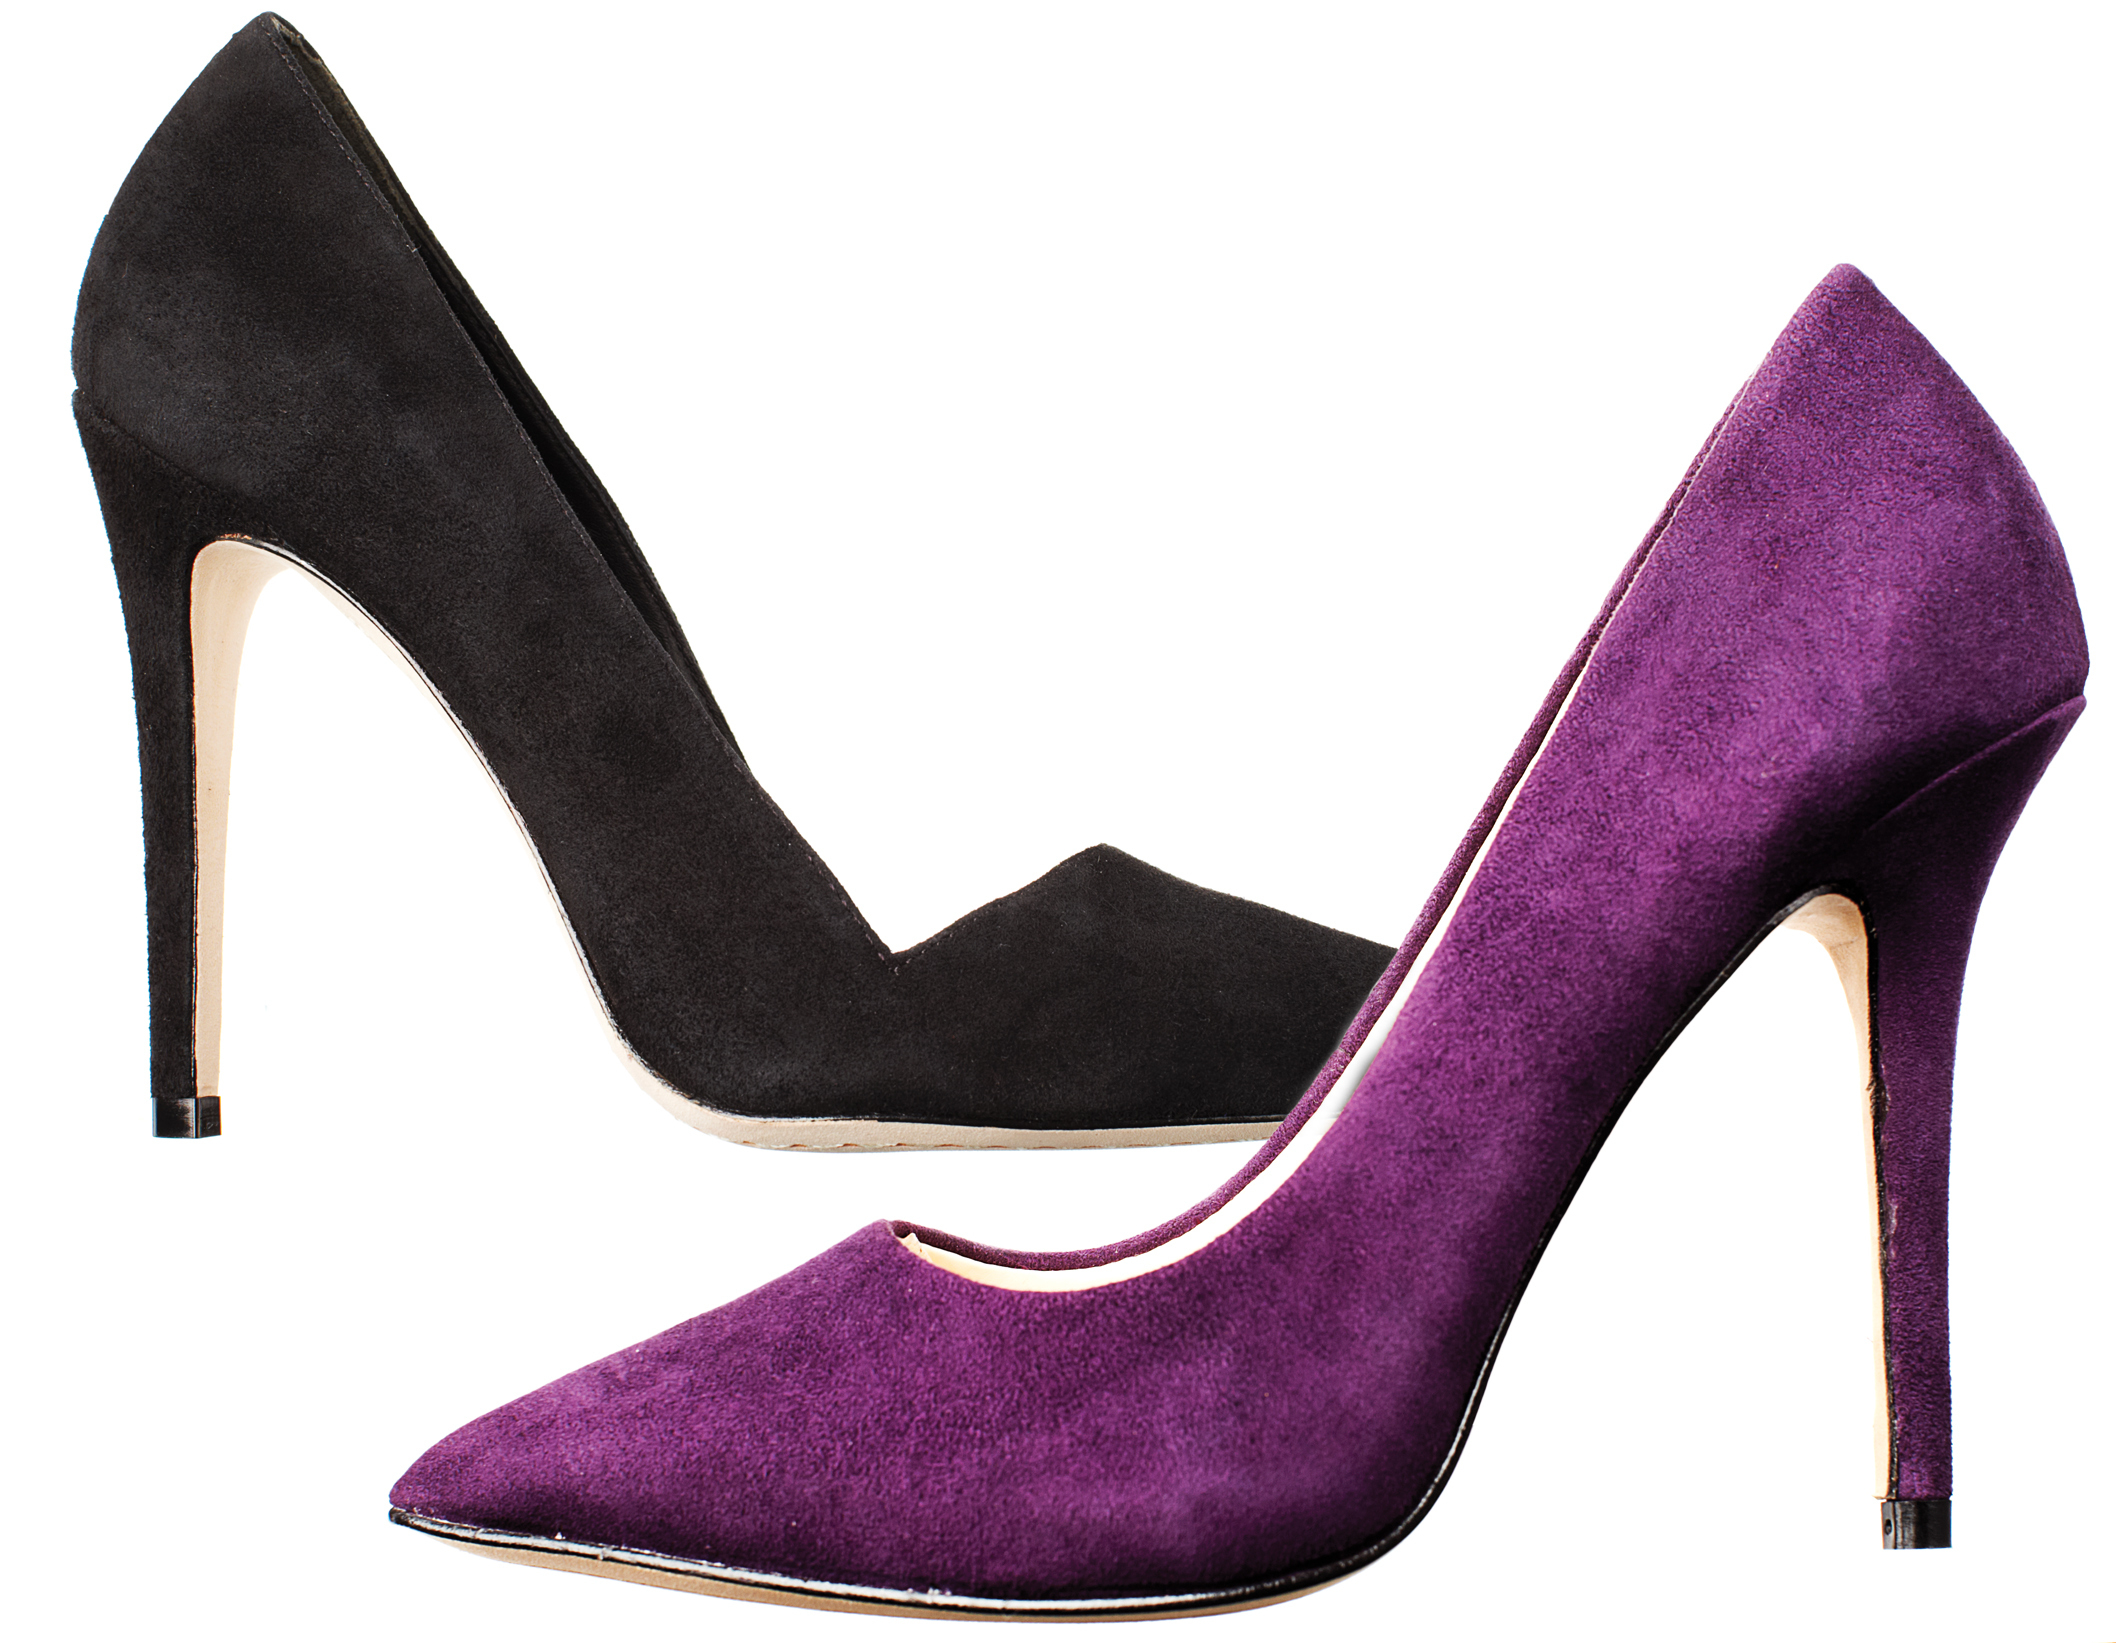 Black heels, high heels, purple heels, stilettos